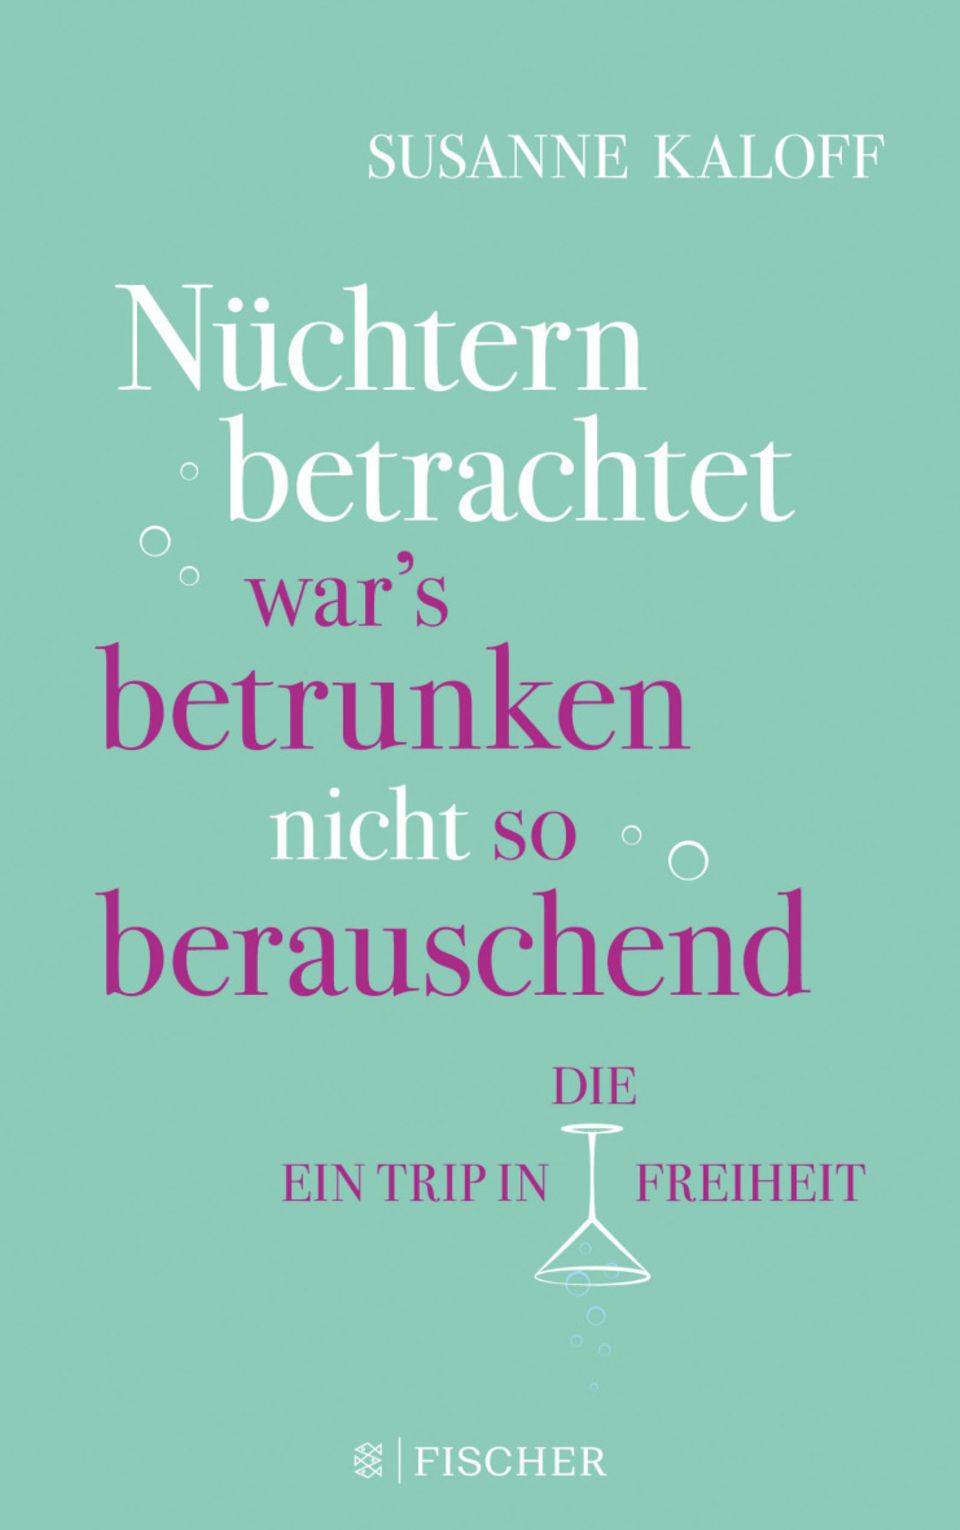 "Nüchtern betrachtet war's betrunken nicht so berauschend. Ein Trip in die Freiheit" von Susanne Kaloff ist im Fischer Taschenbuch Verlag erschienen und kostet 14,99 Euro